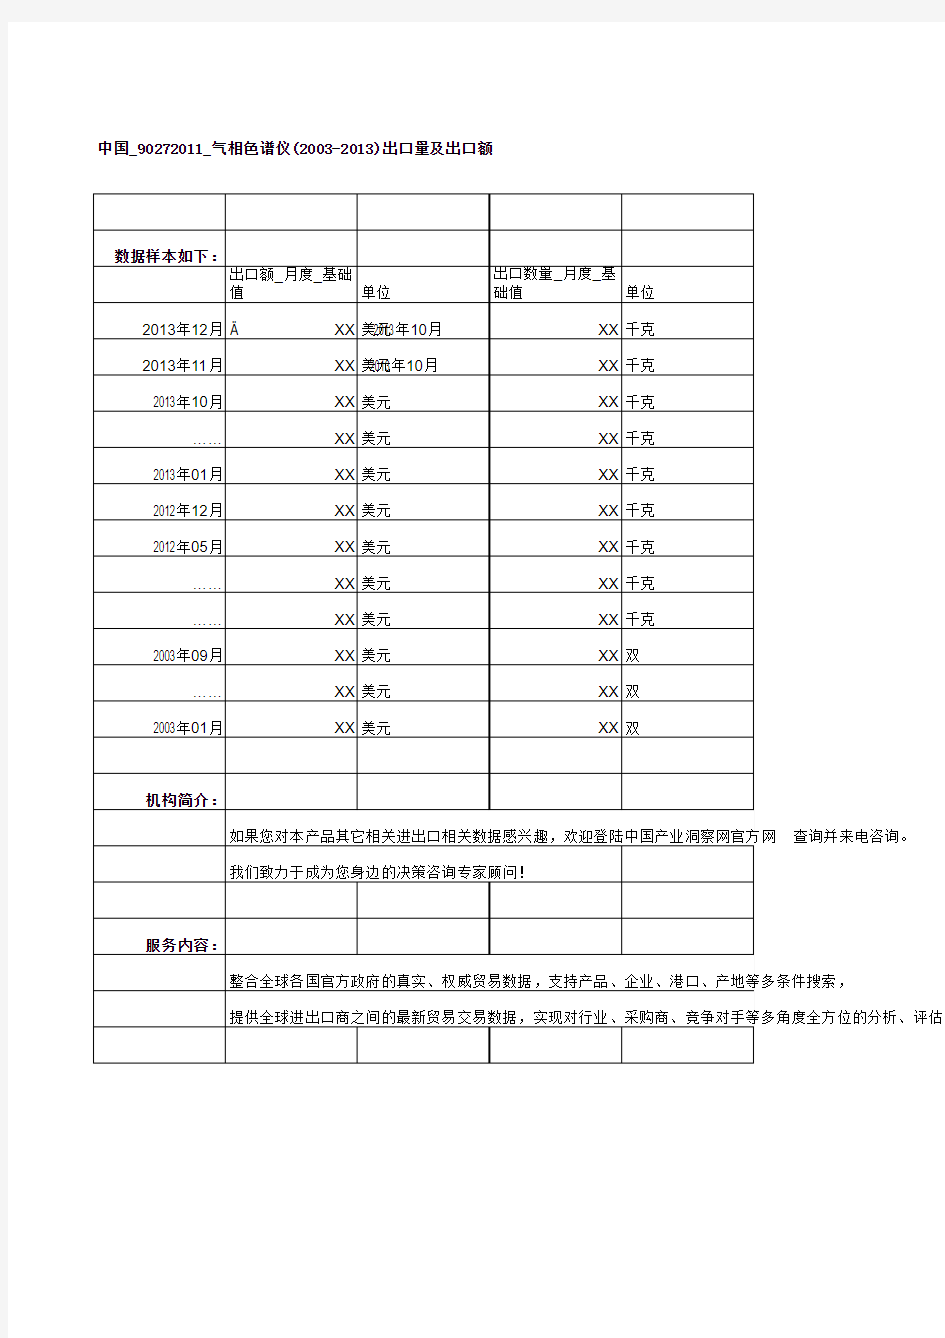 中国_90272011_气相色谱仪(2003-2013)出口量及出口额